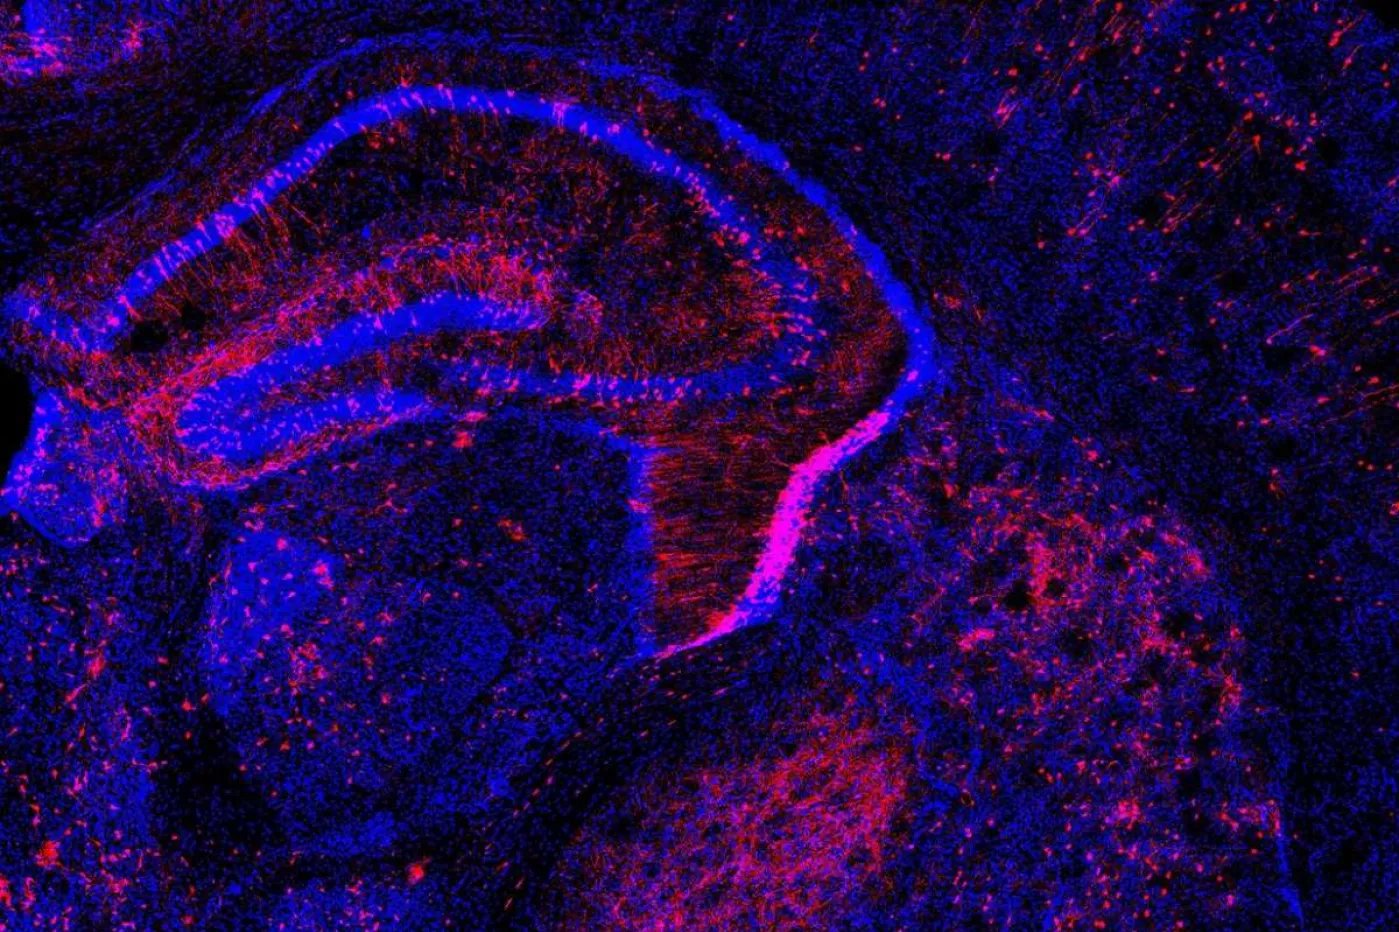 El método 'Pertub-seq' permite introducir cambios, como en esta célula de cerebro murino. Foto: Laboratorio de P. Arlotta (Harvard)